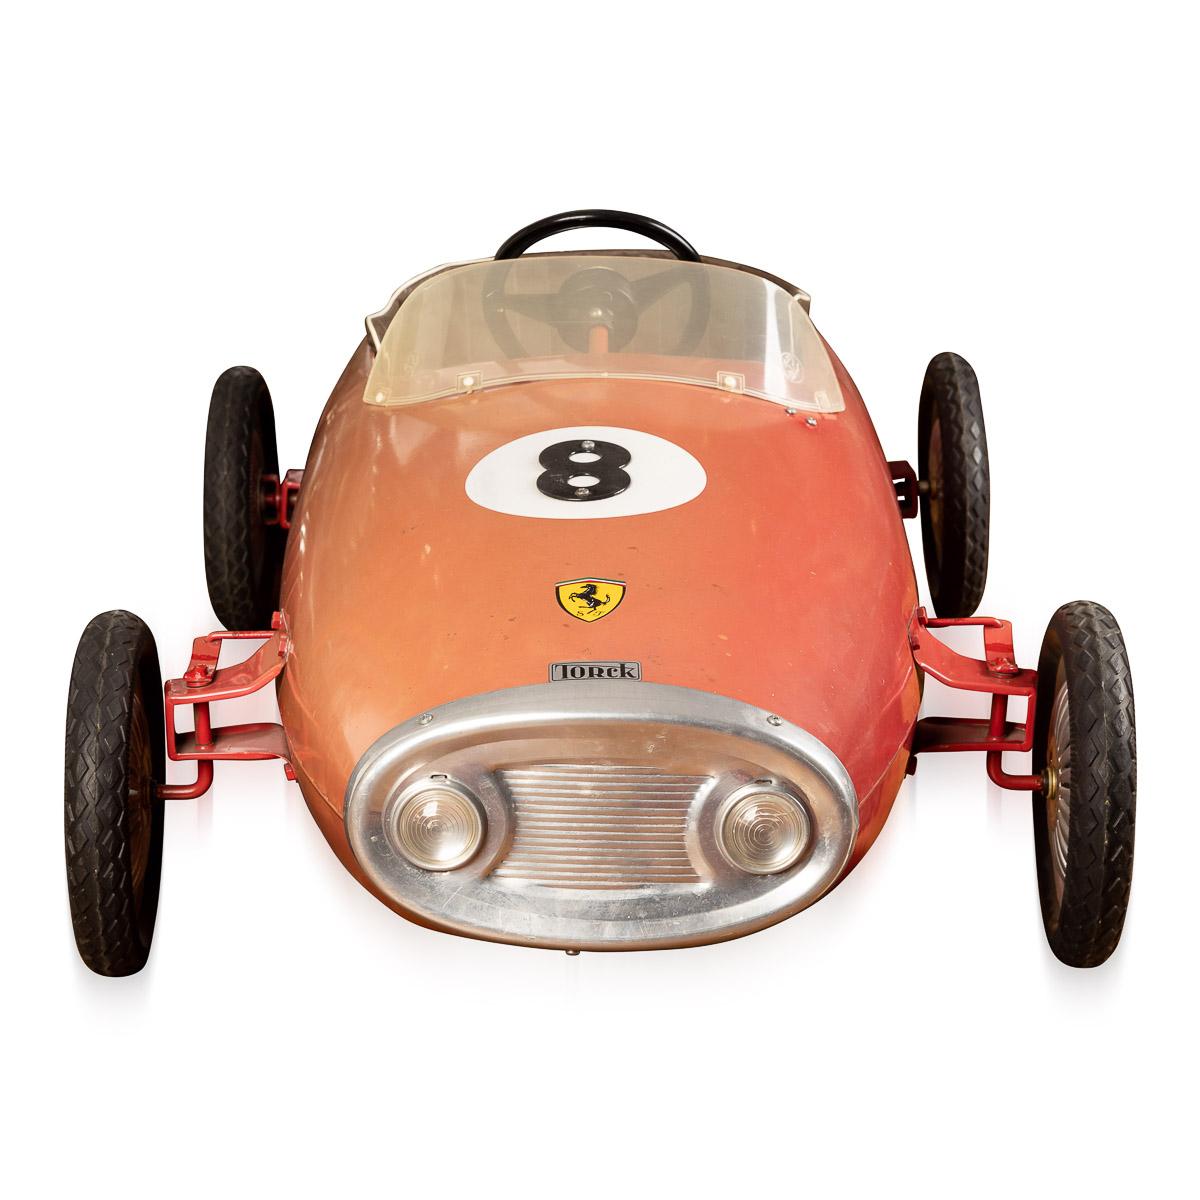 Belgian Rare 'Ferrari' Pedal Car Made by Torck, Belgium, c.1960